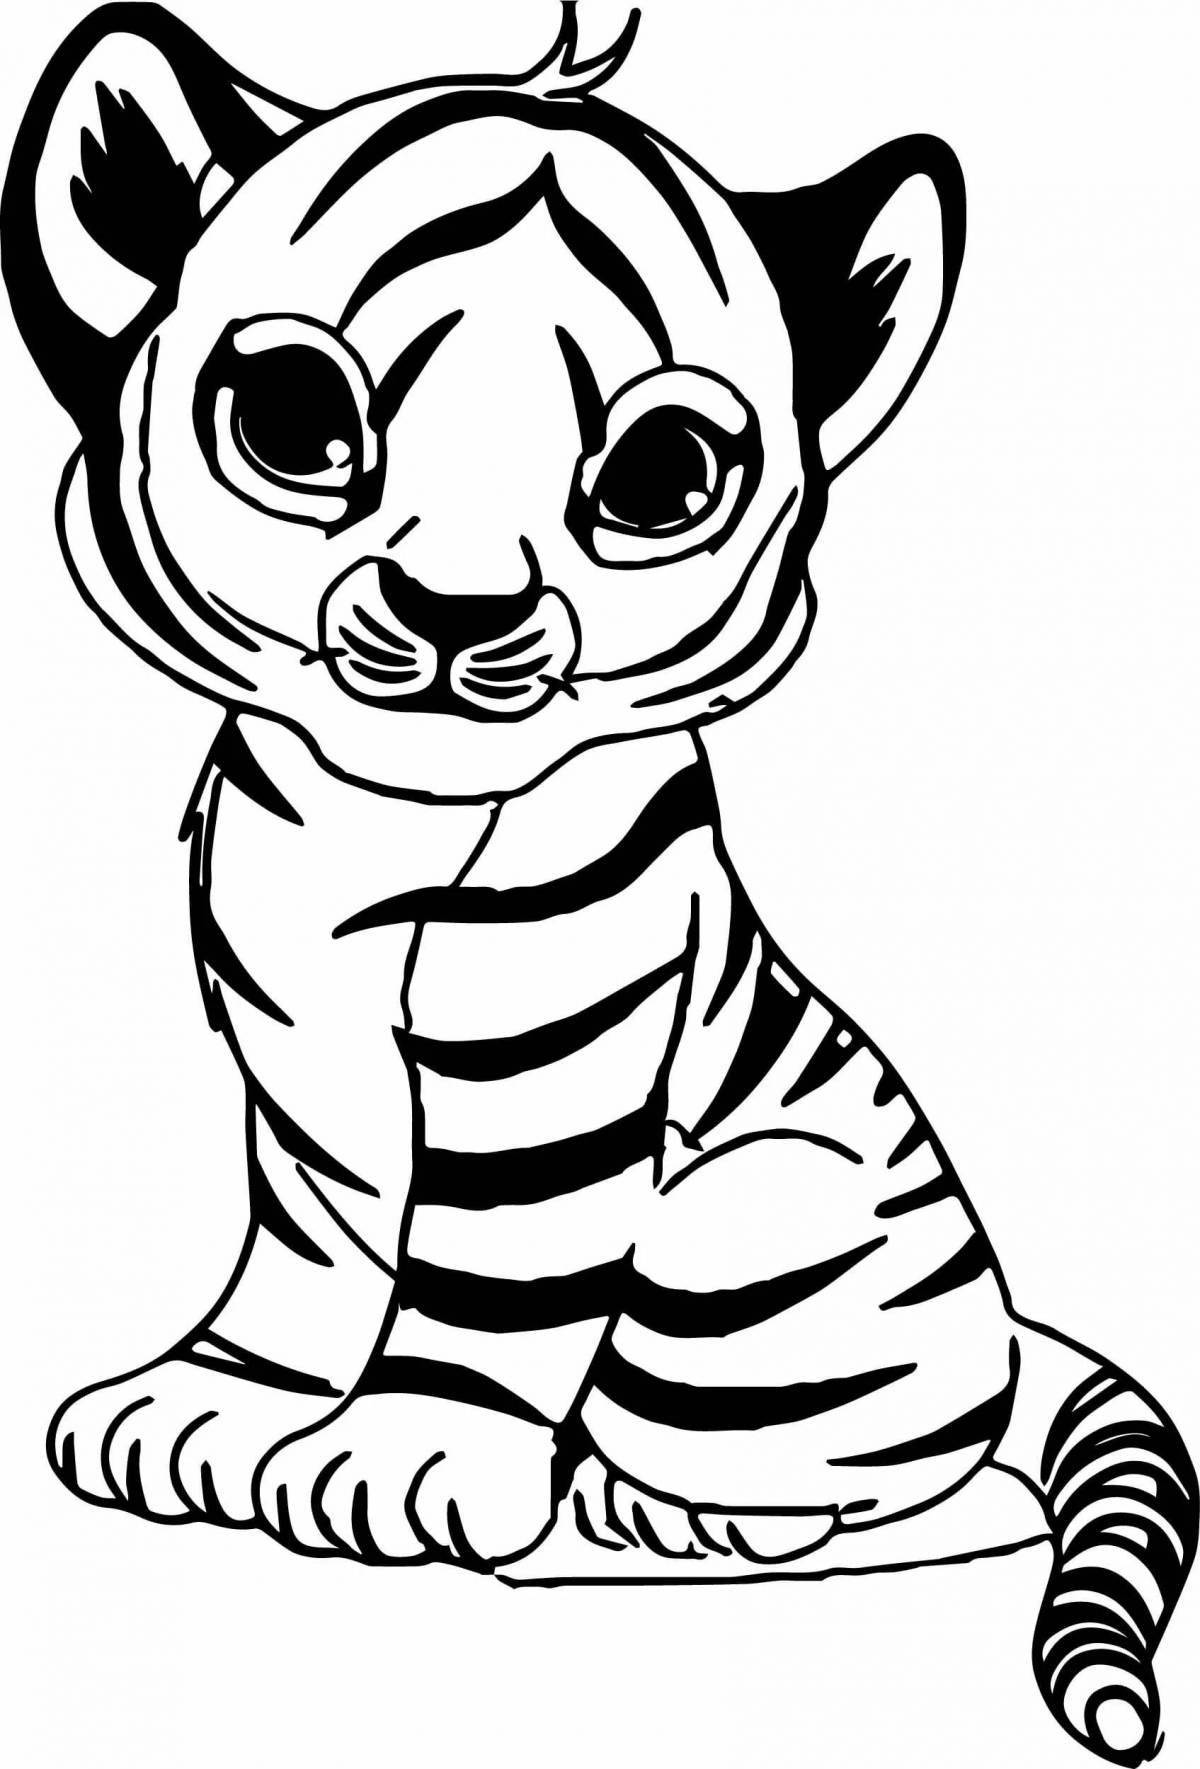 Величественная раскраска тигр для детей 6-7 лет